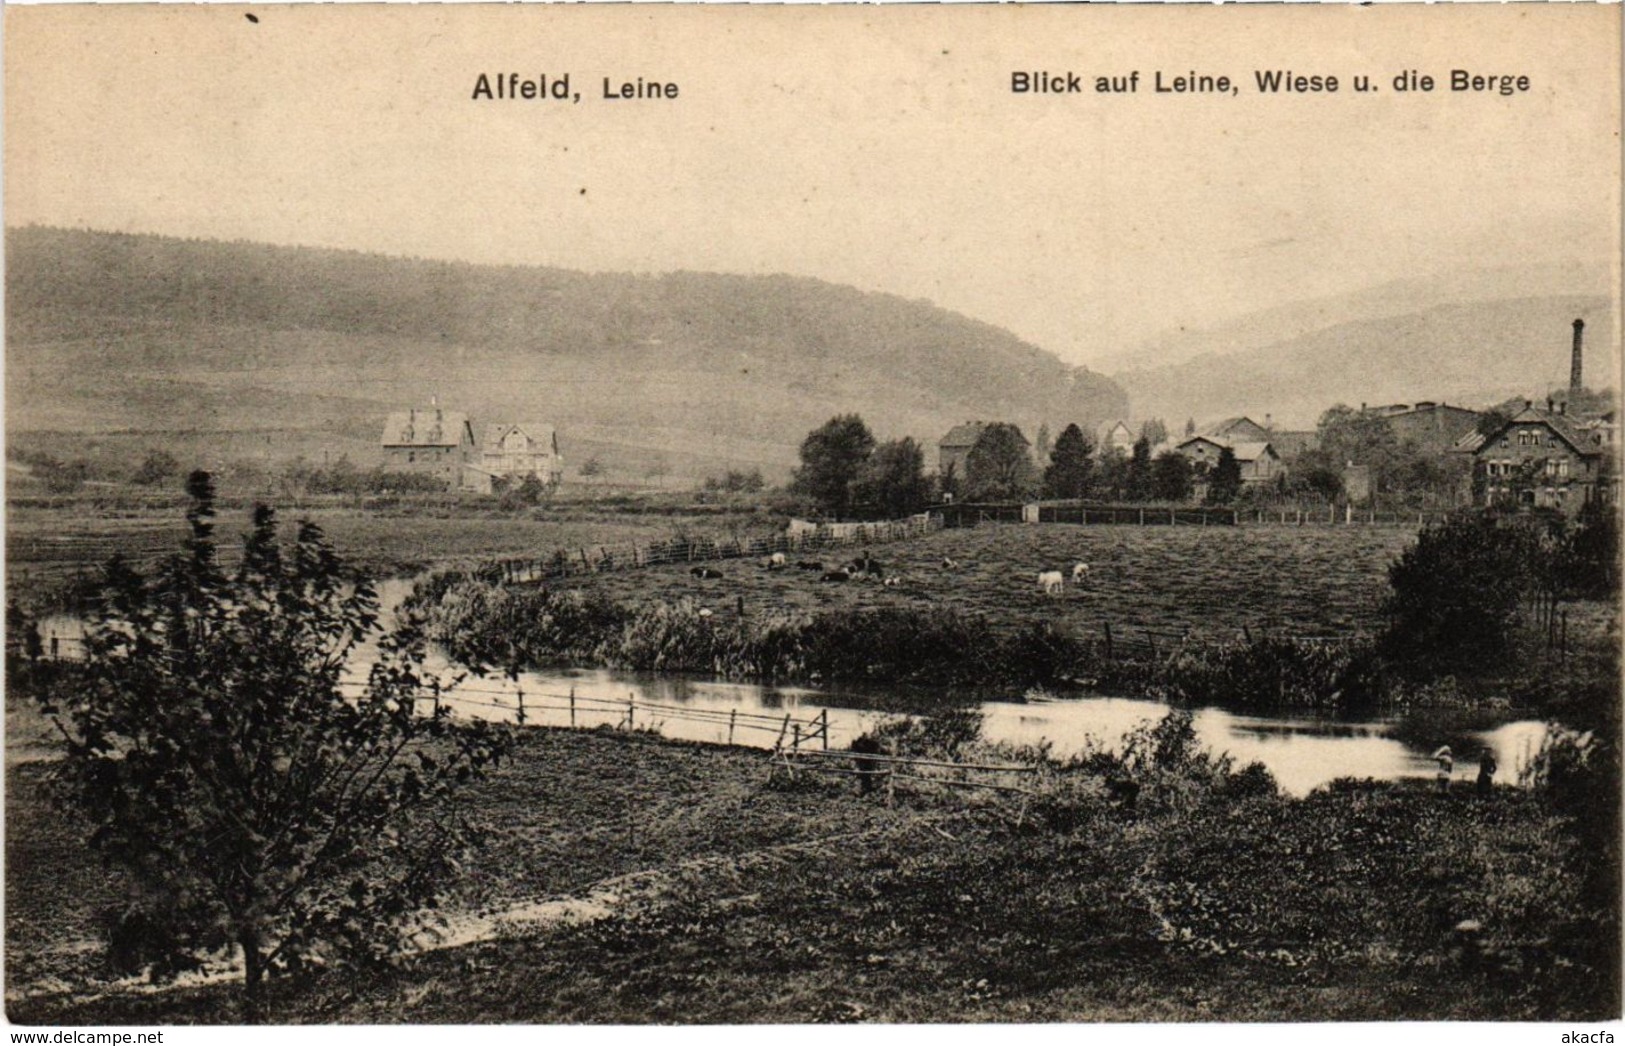 CPA AK Alfeld - Leine - Blick Auf Leine - Wiese - Die Berge GERMANY (969764) - Alfeld